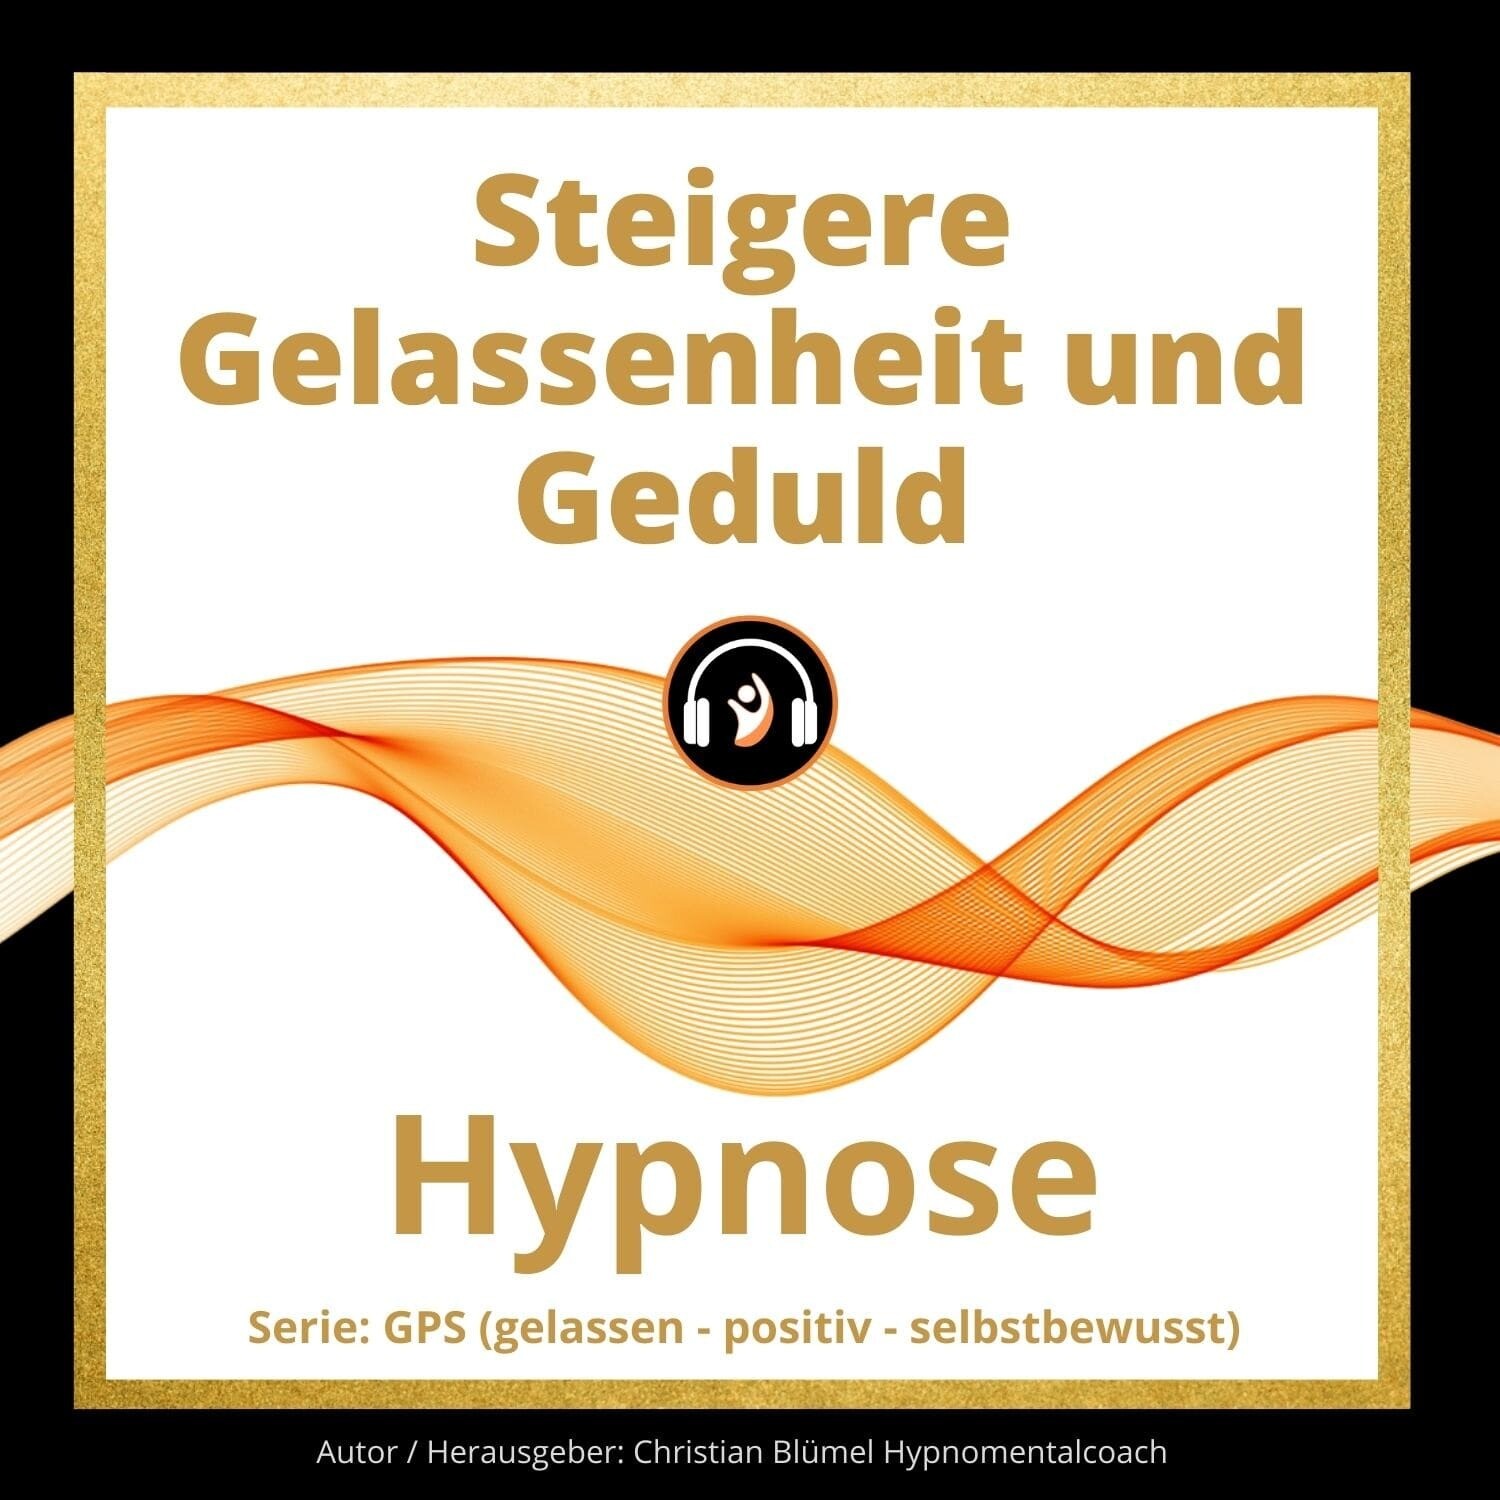 Audio Hypnose: Steigere Gelassenheit und Geduld - GPS Hypnose